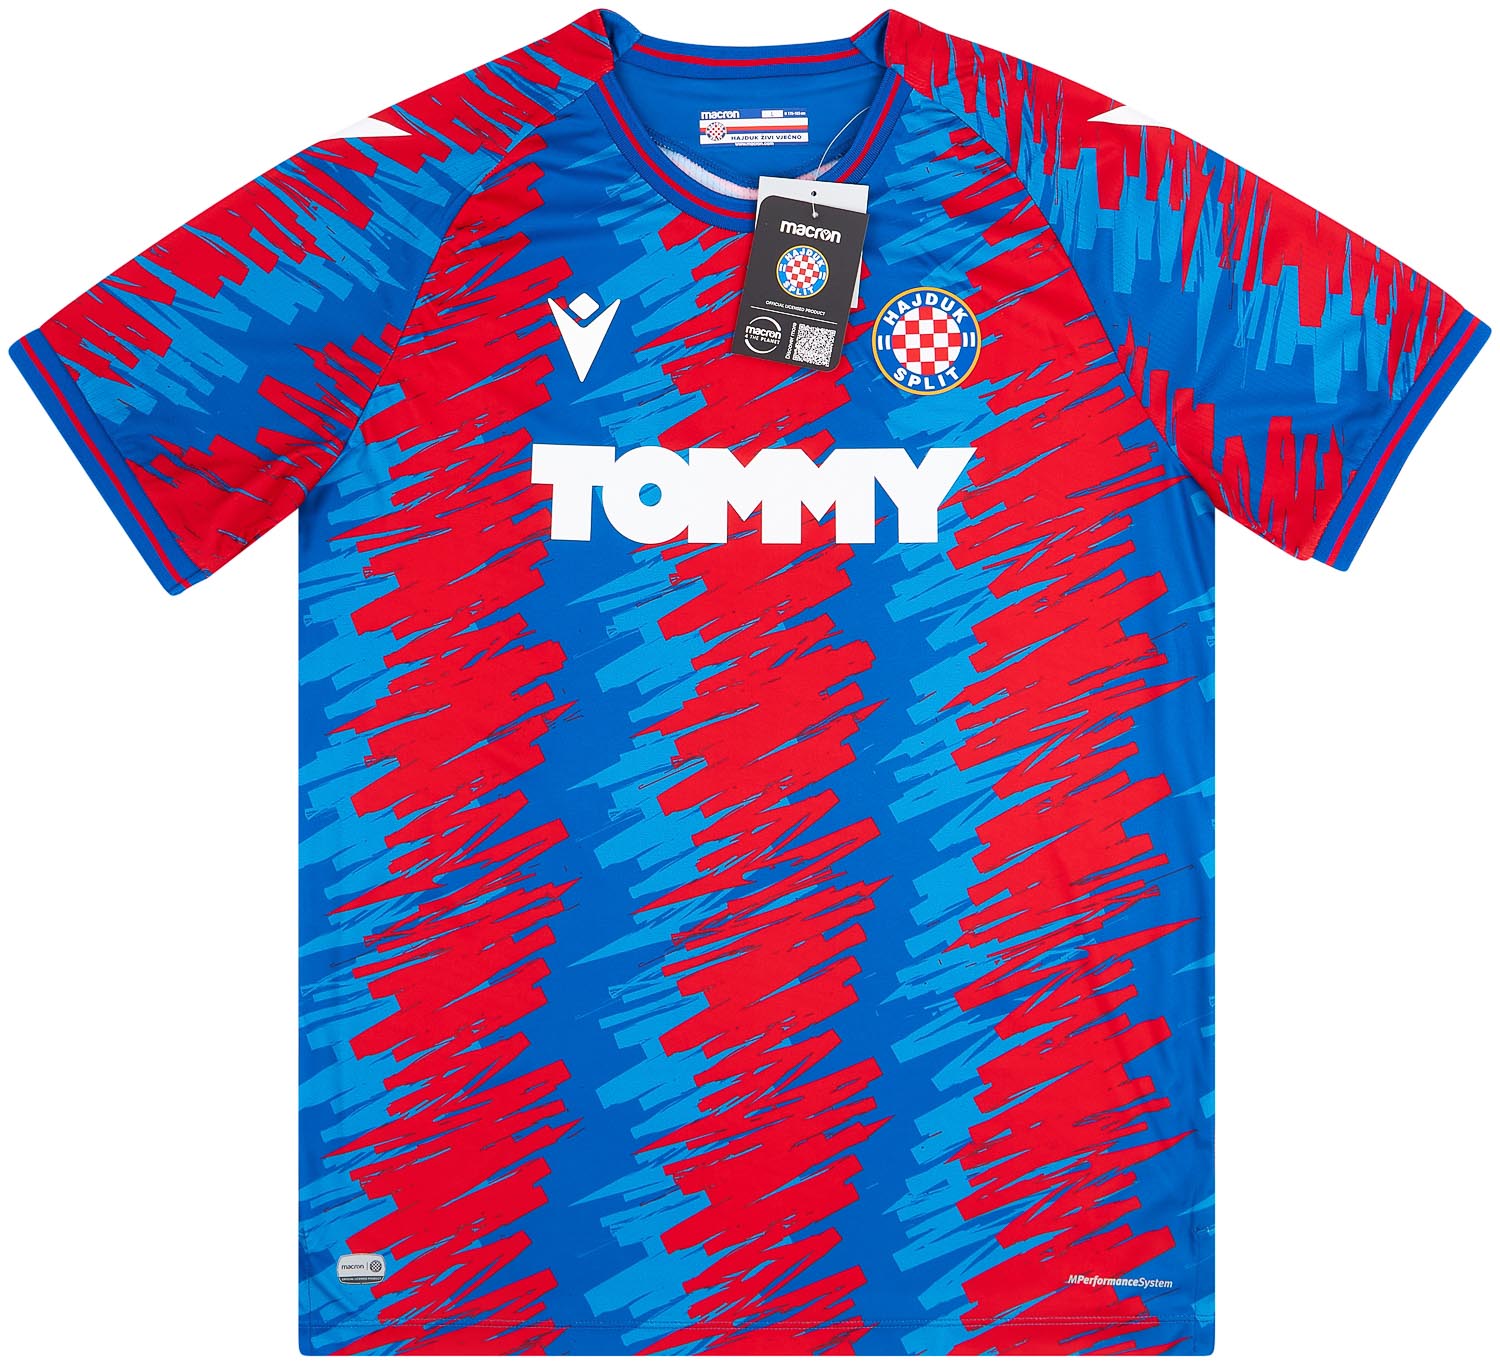 Hajduk Split 15-16 Kits Released - Footy Headlines